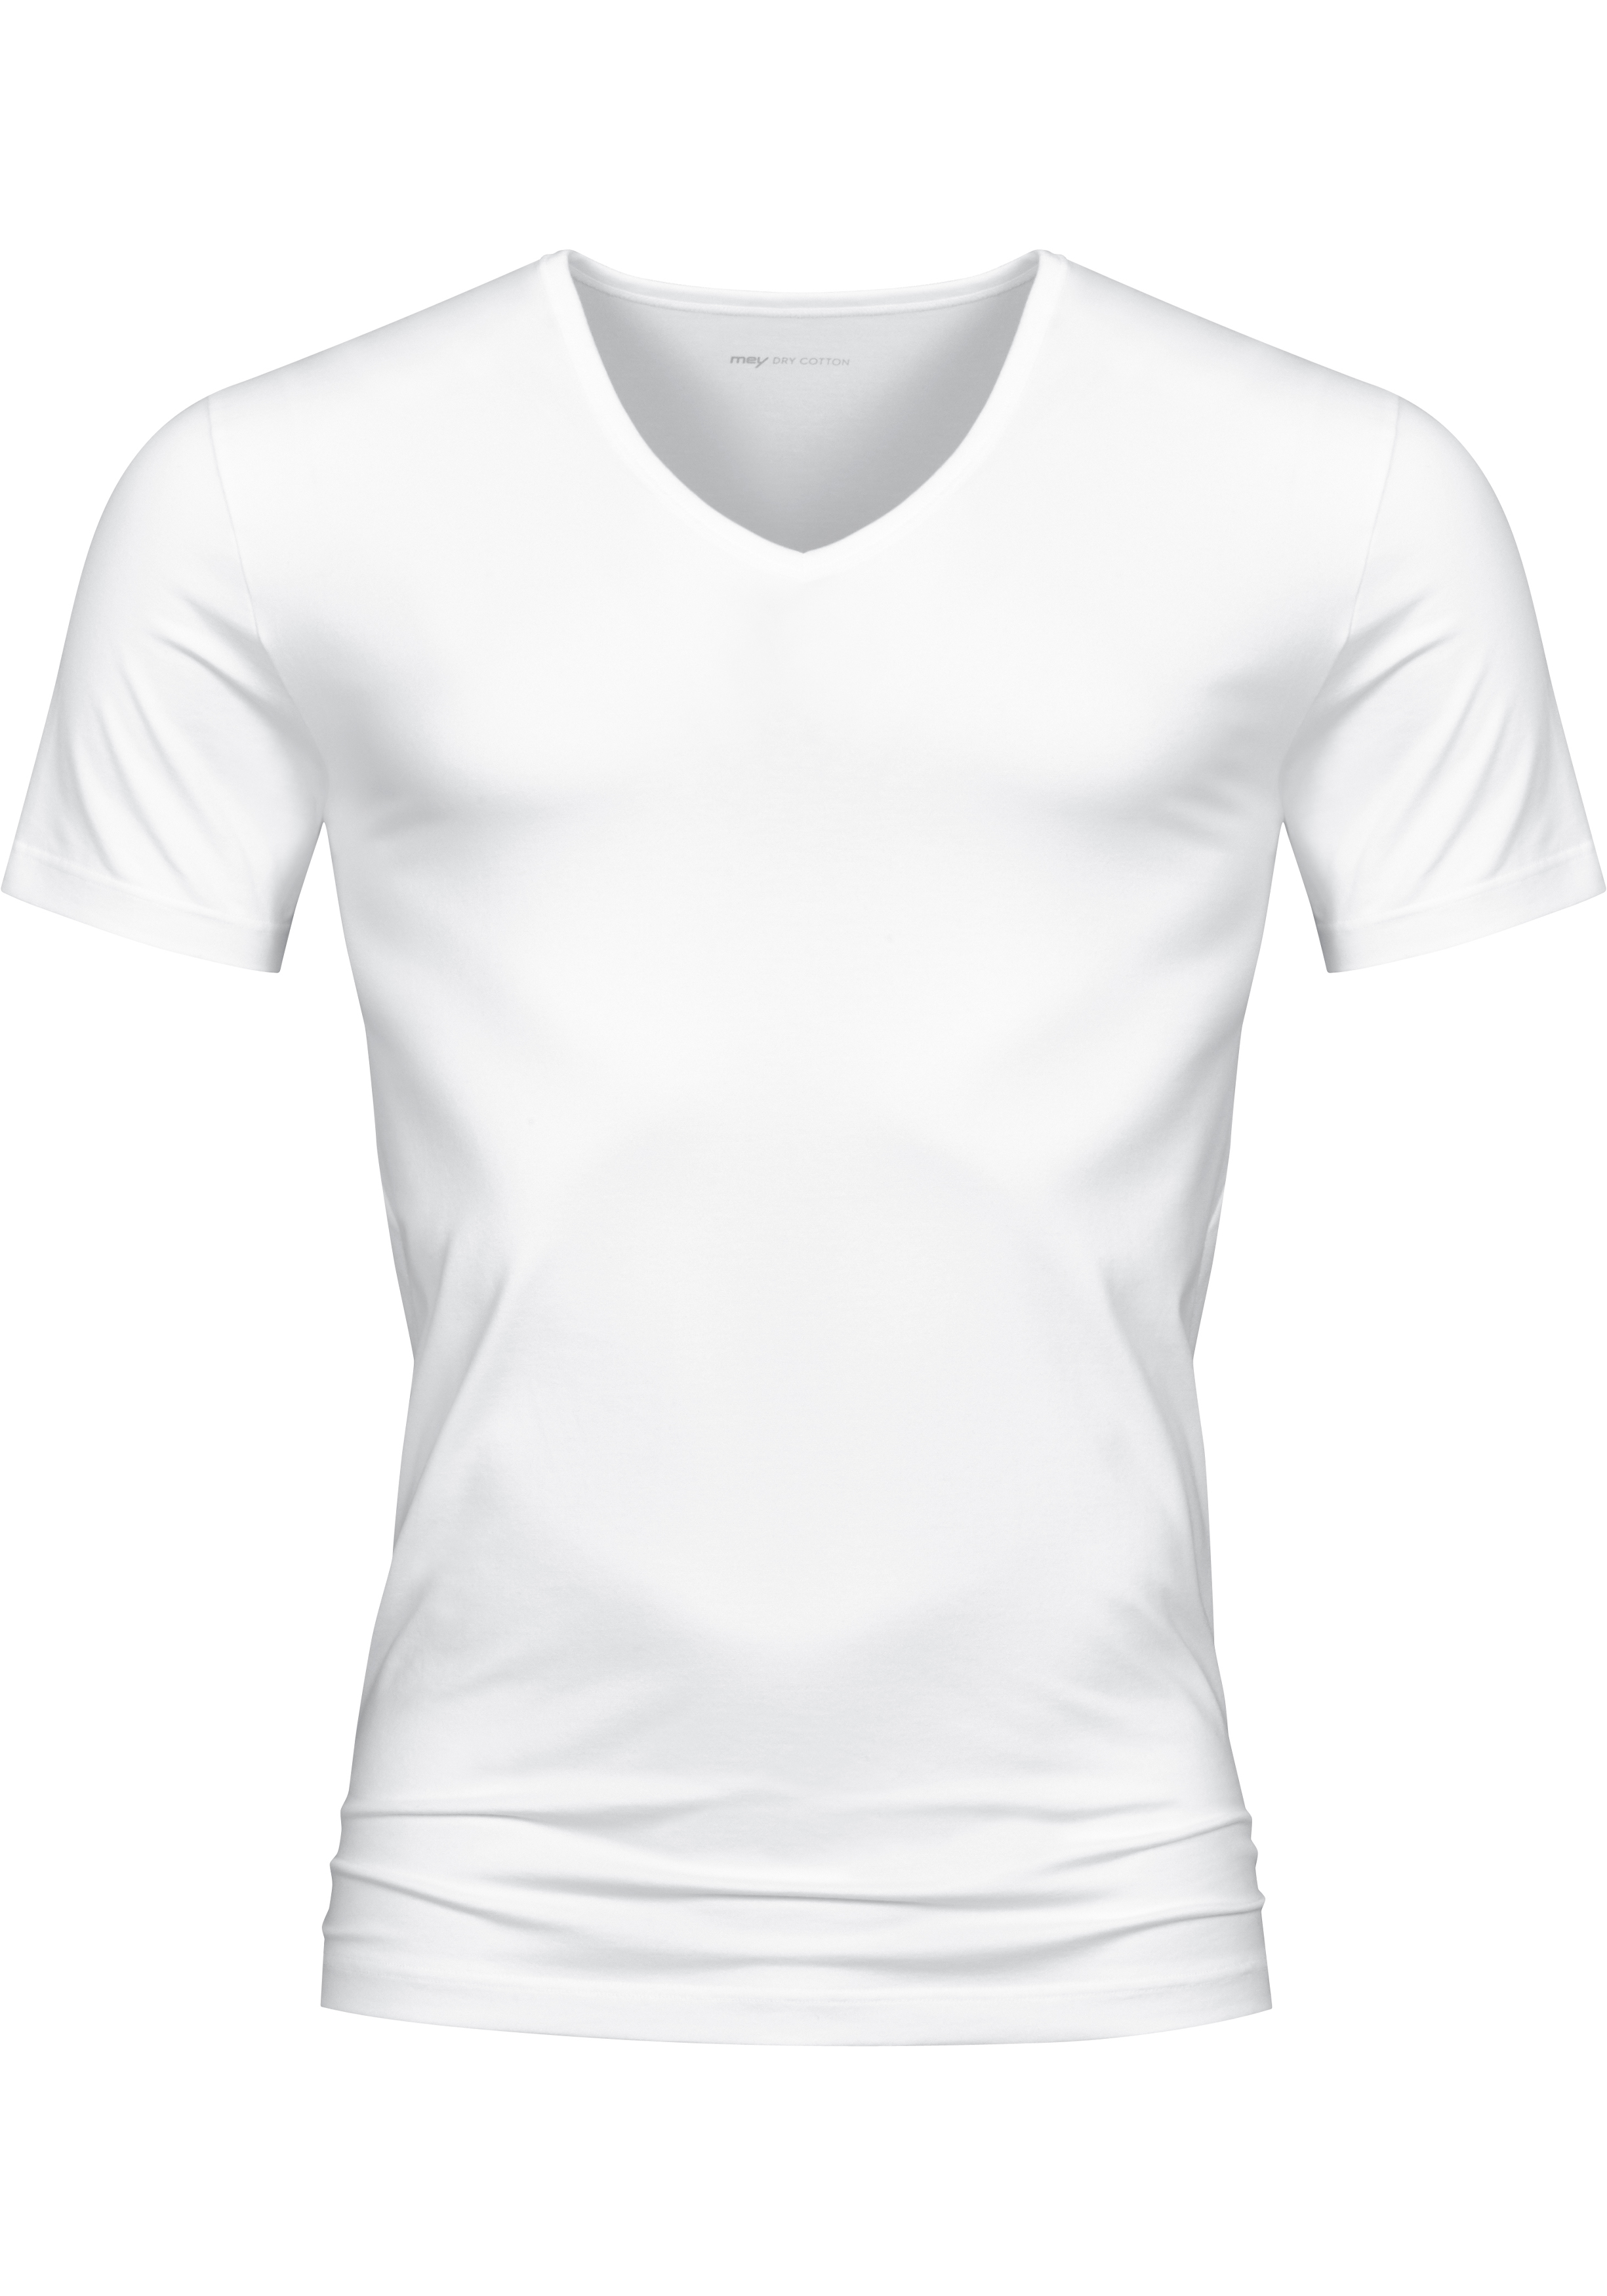 oppervlakkig Met name Observeer Mey Dry Cotton T-shirt (1-pack), heren T-shirt V-hals, wit - Shop de  nieuwste voorjaarsmode